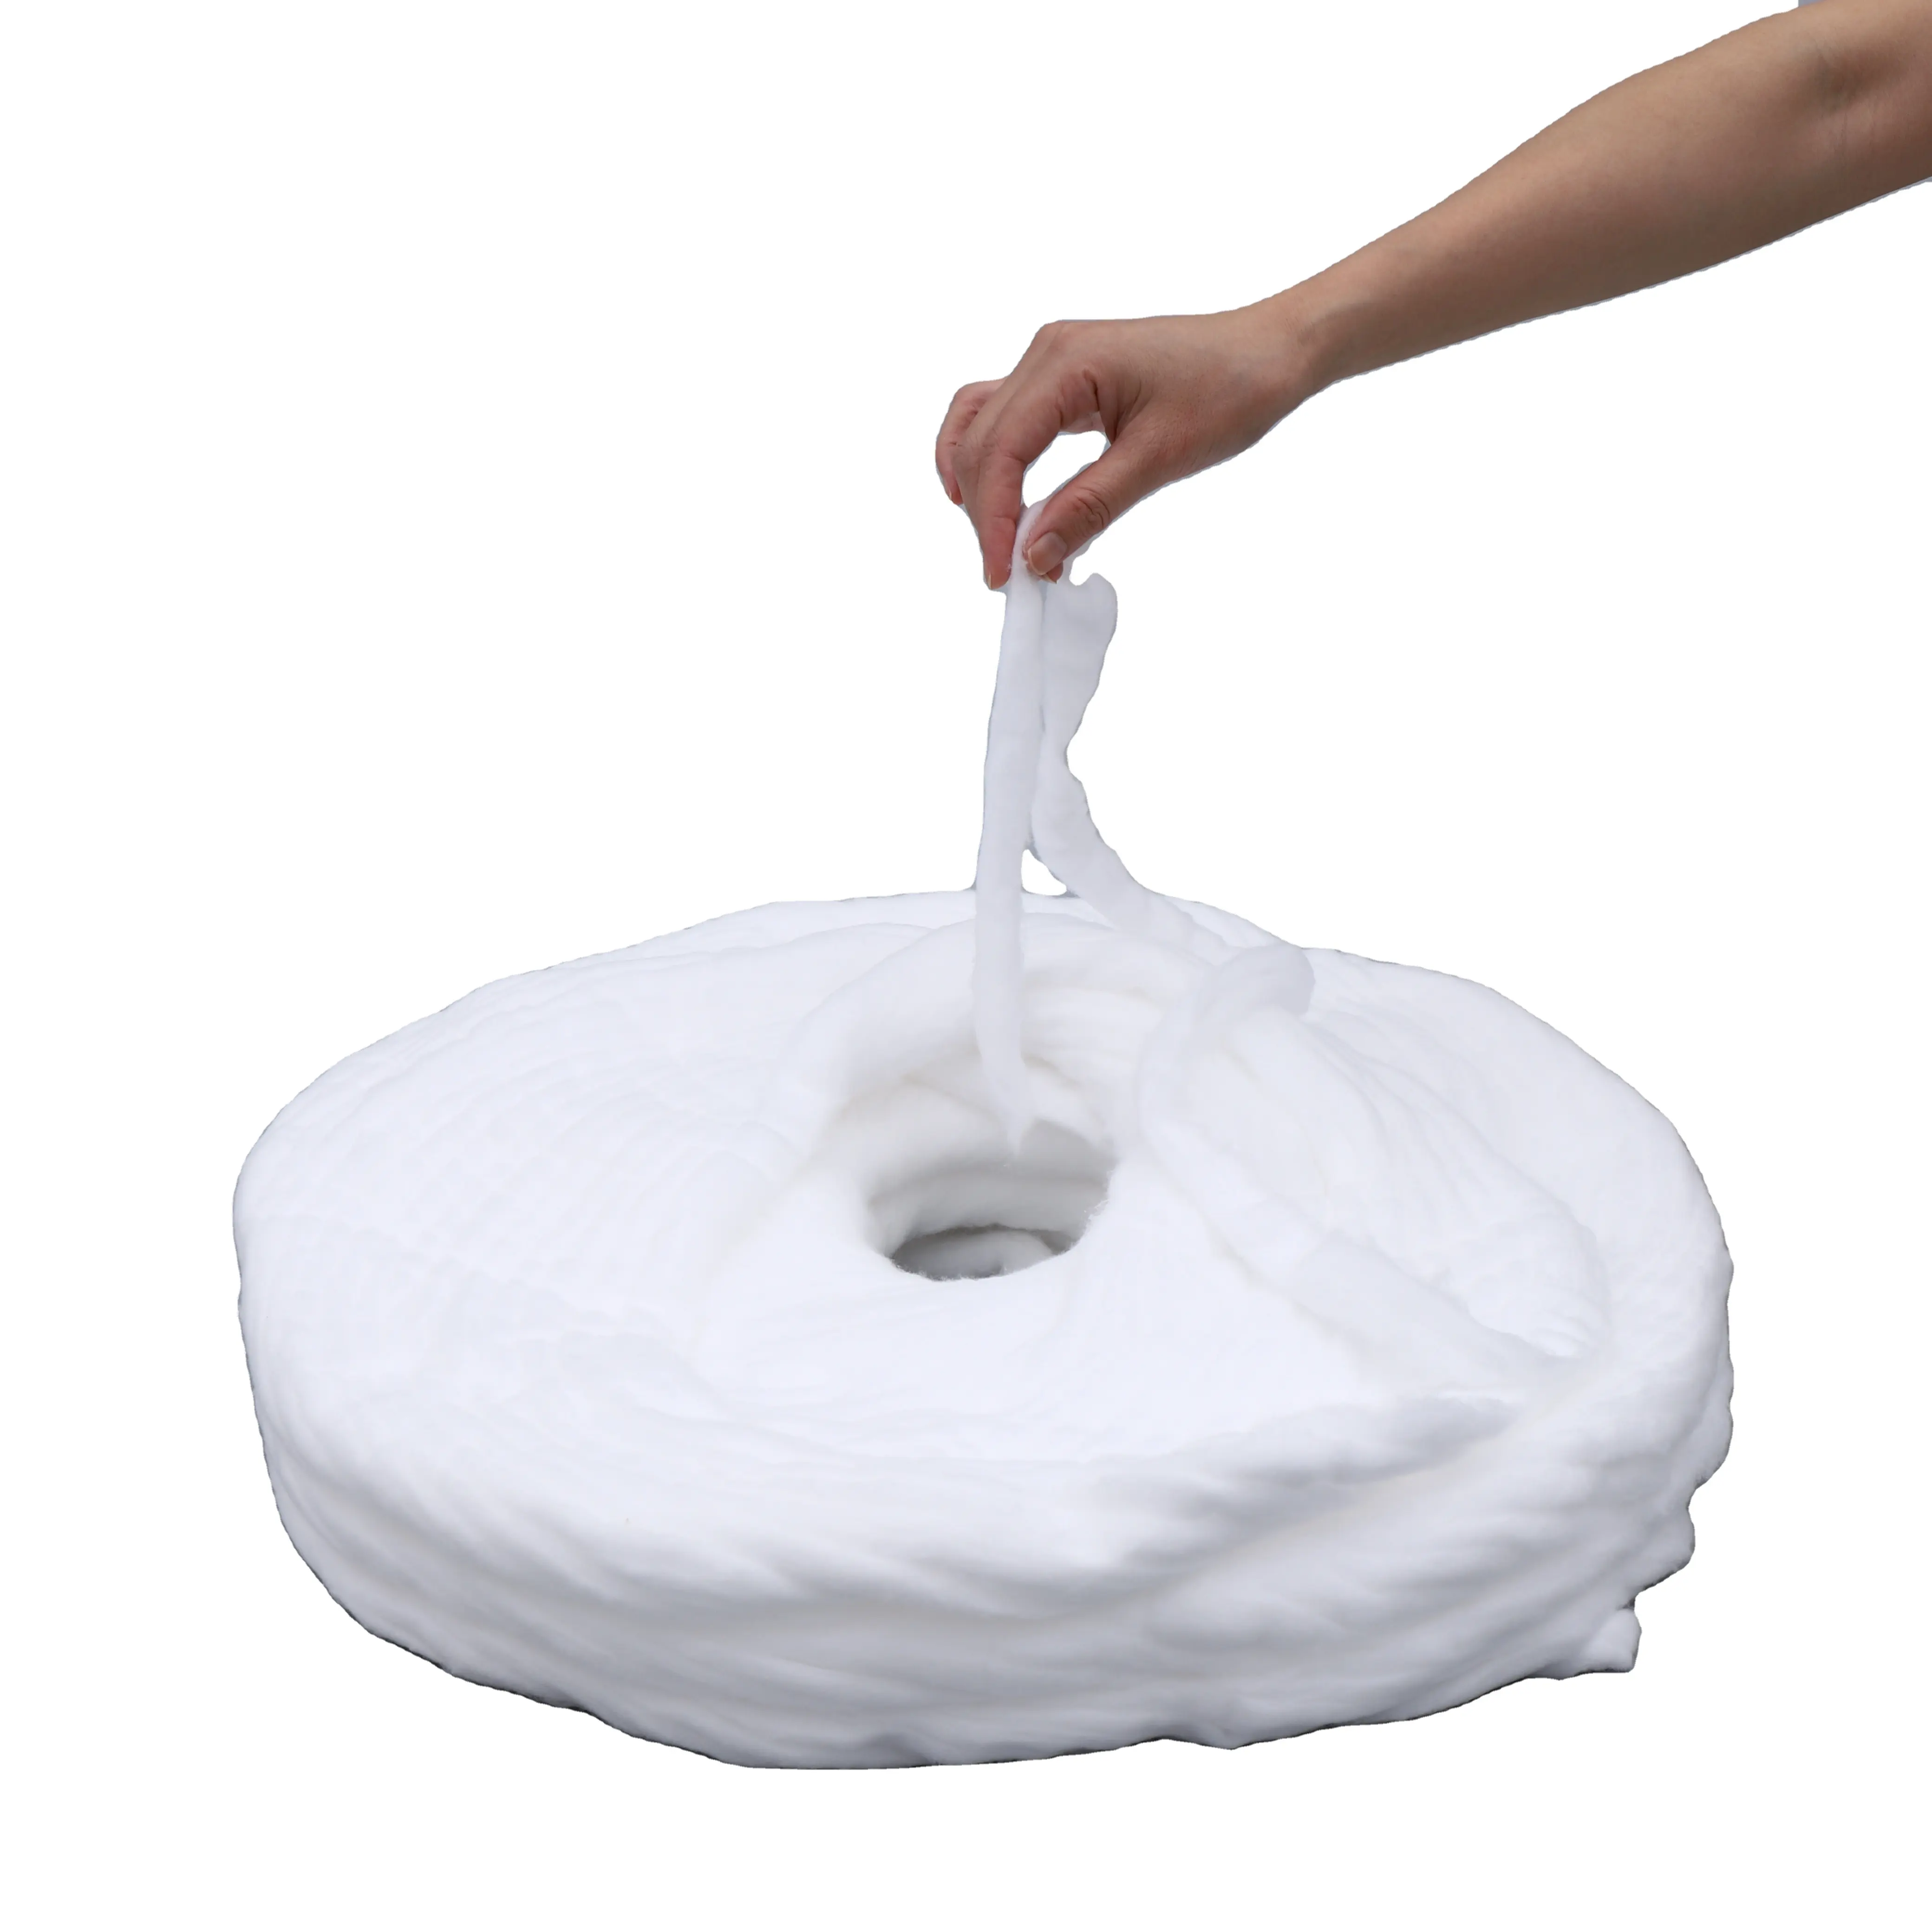 Bobina de algodão 3.8 g/m, 100% algodão absorvente cru, para uso médico em algodão